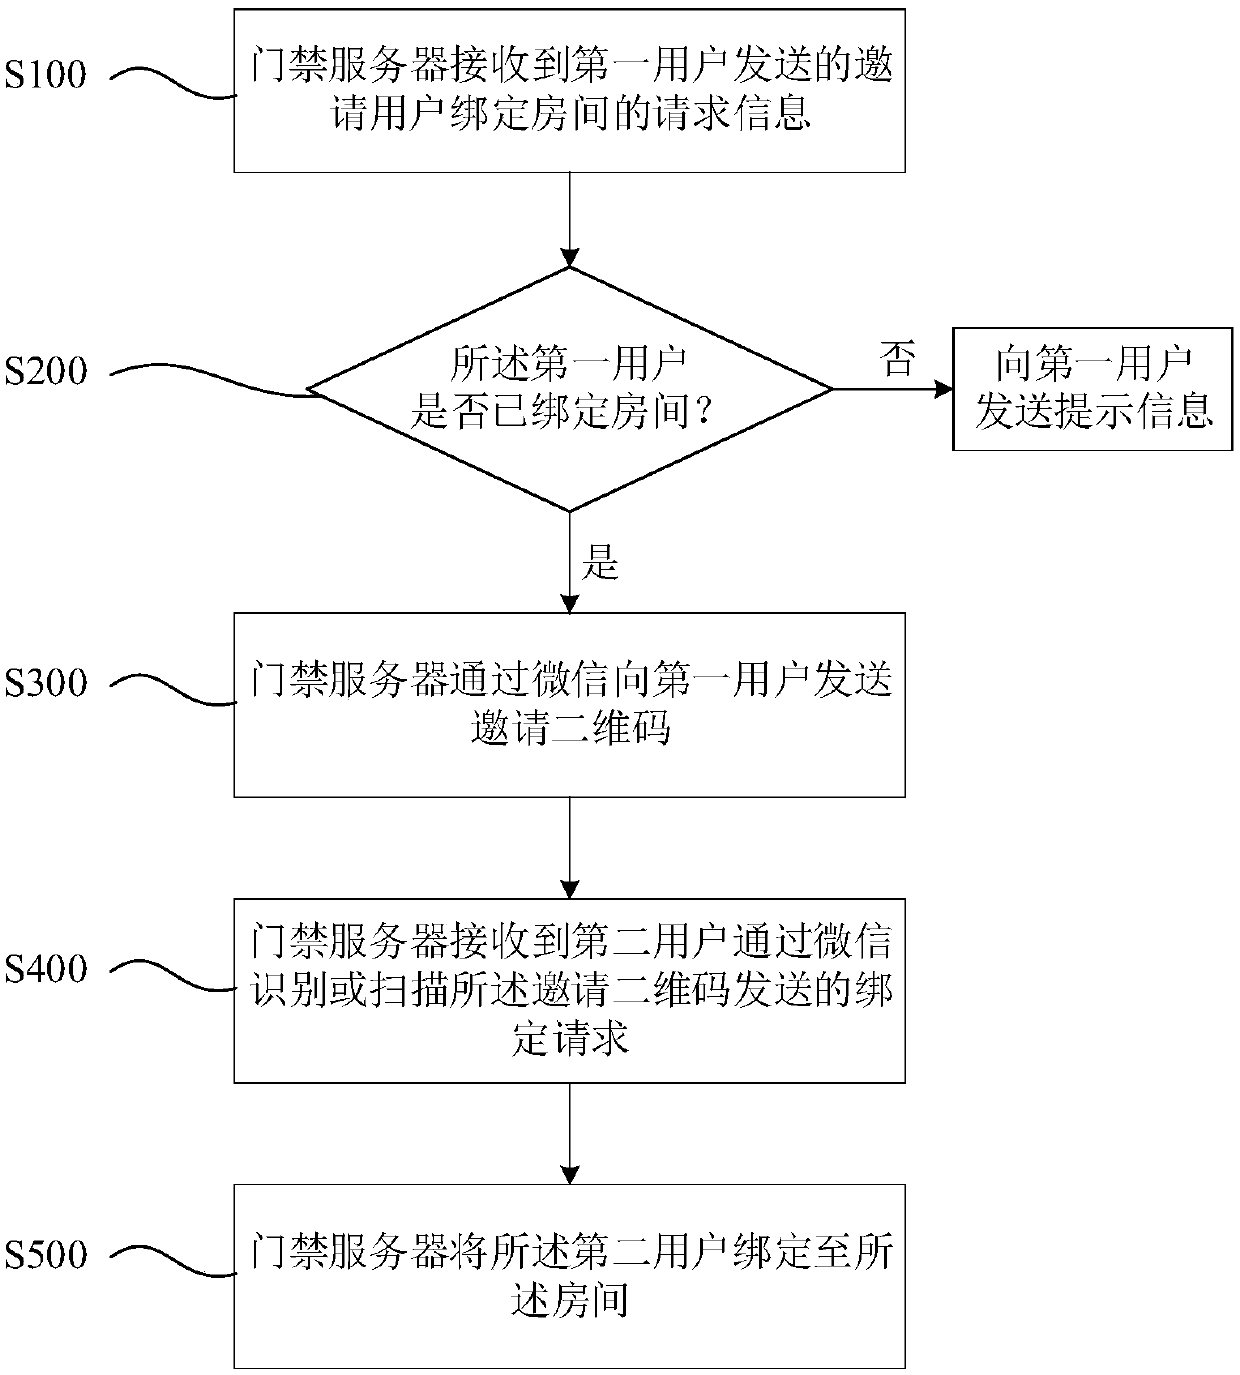 WeChat door opening-based quick room binding method